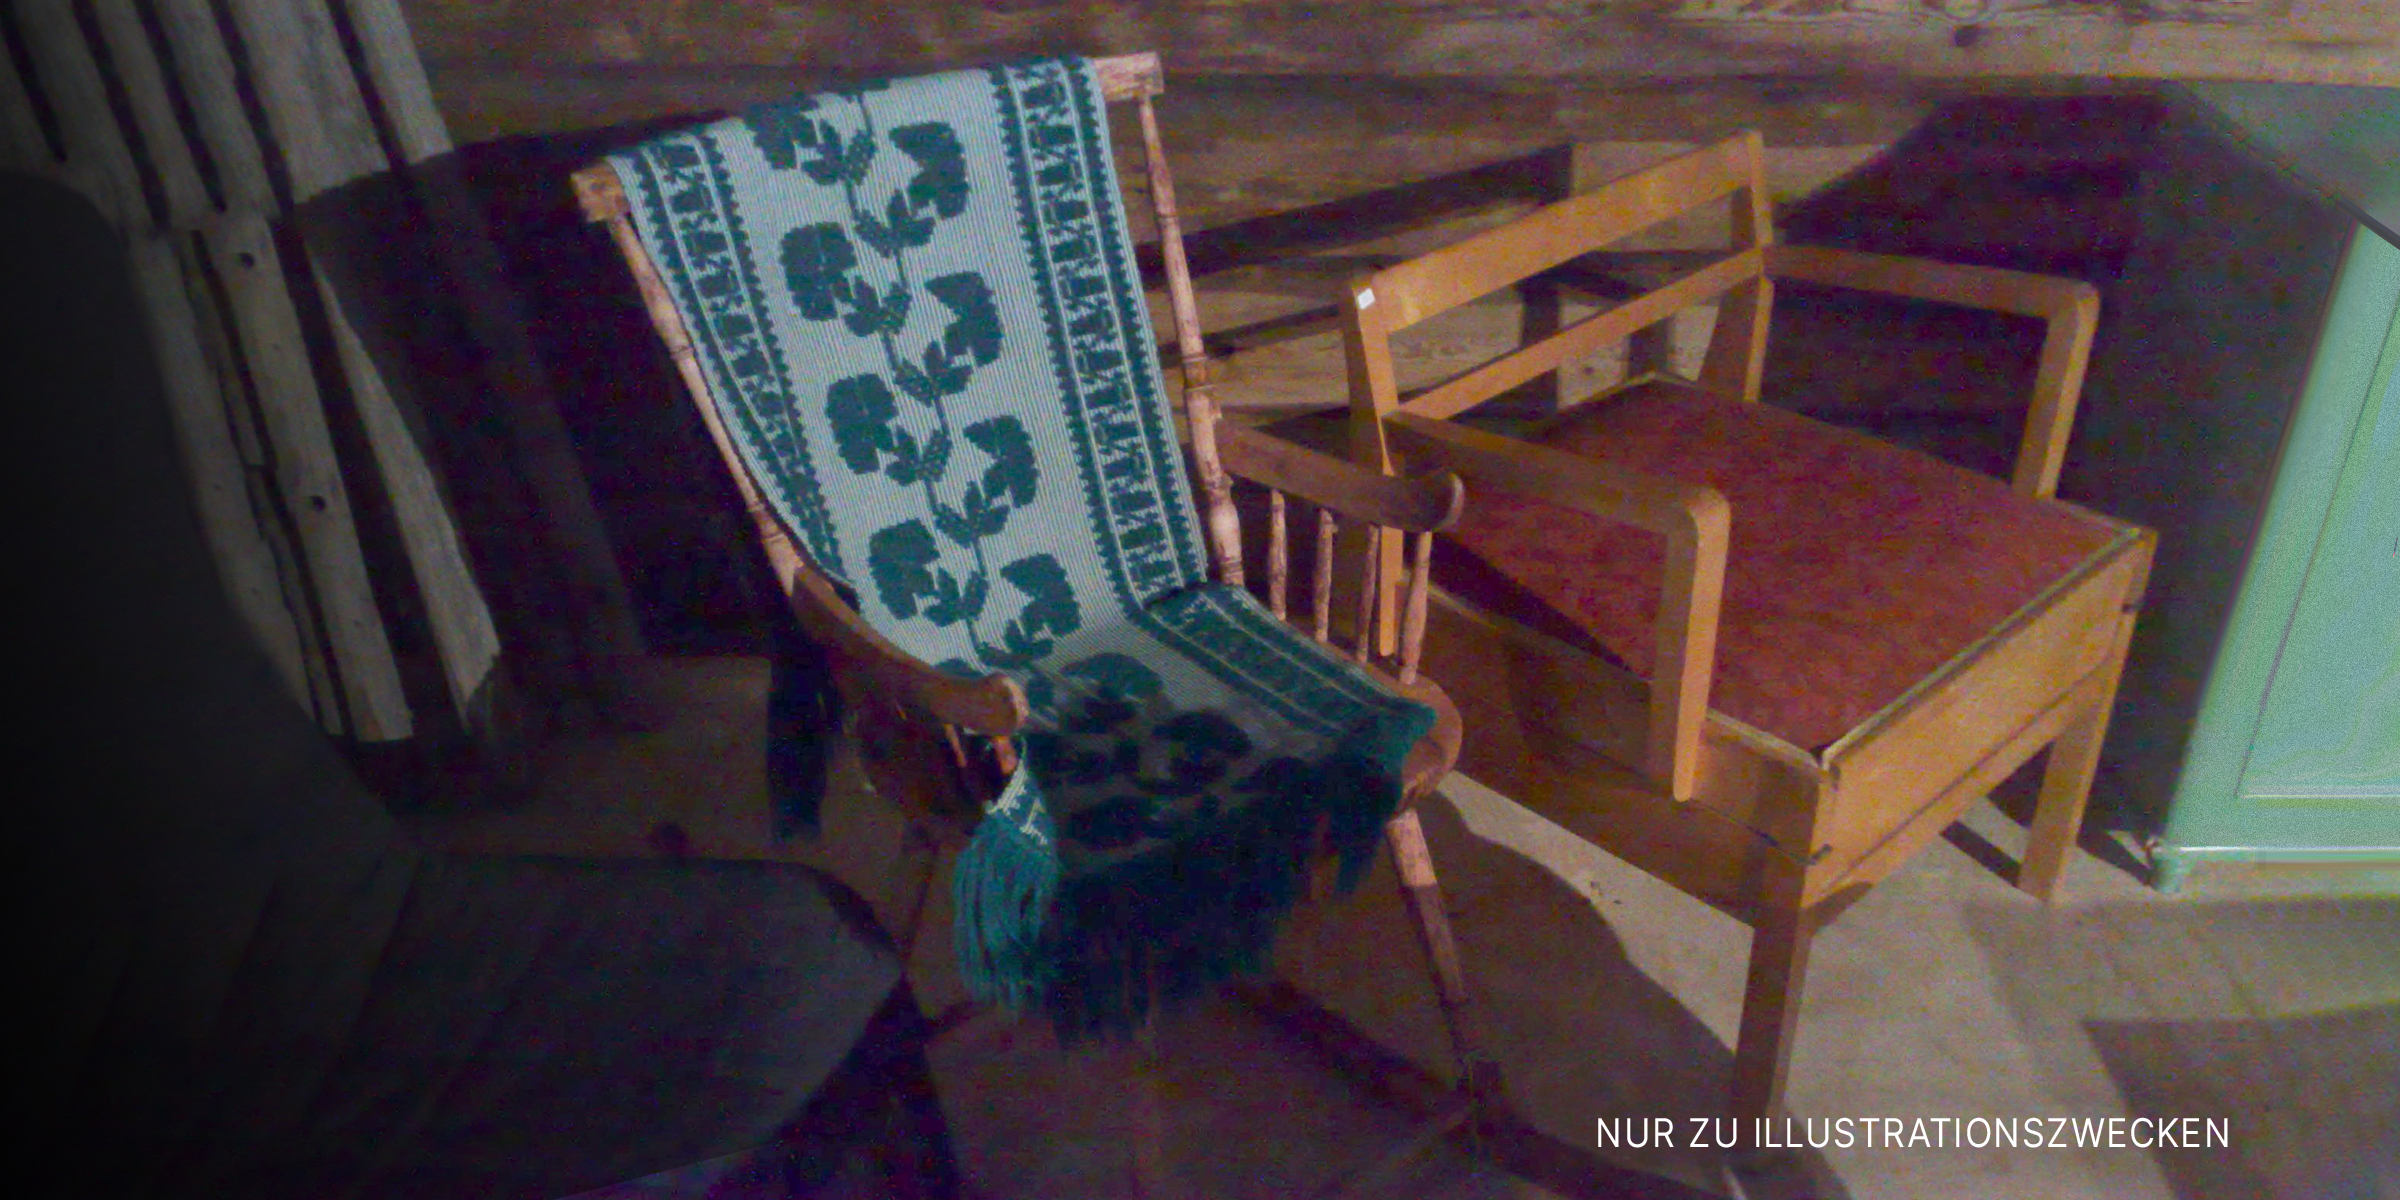 Ein alter Schaukelstuhl in der Ecke eines Wohnzimmers | Quelle: Flickr / xmacex (CC BY-SA 2.0)